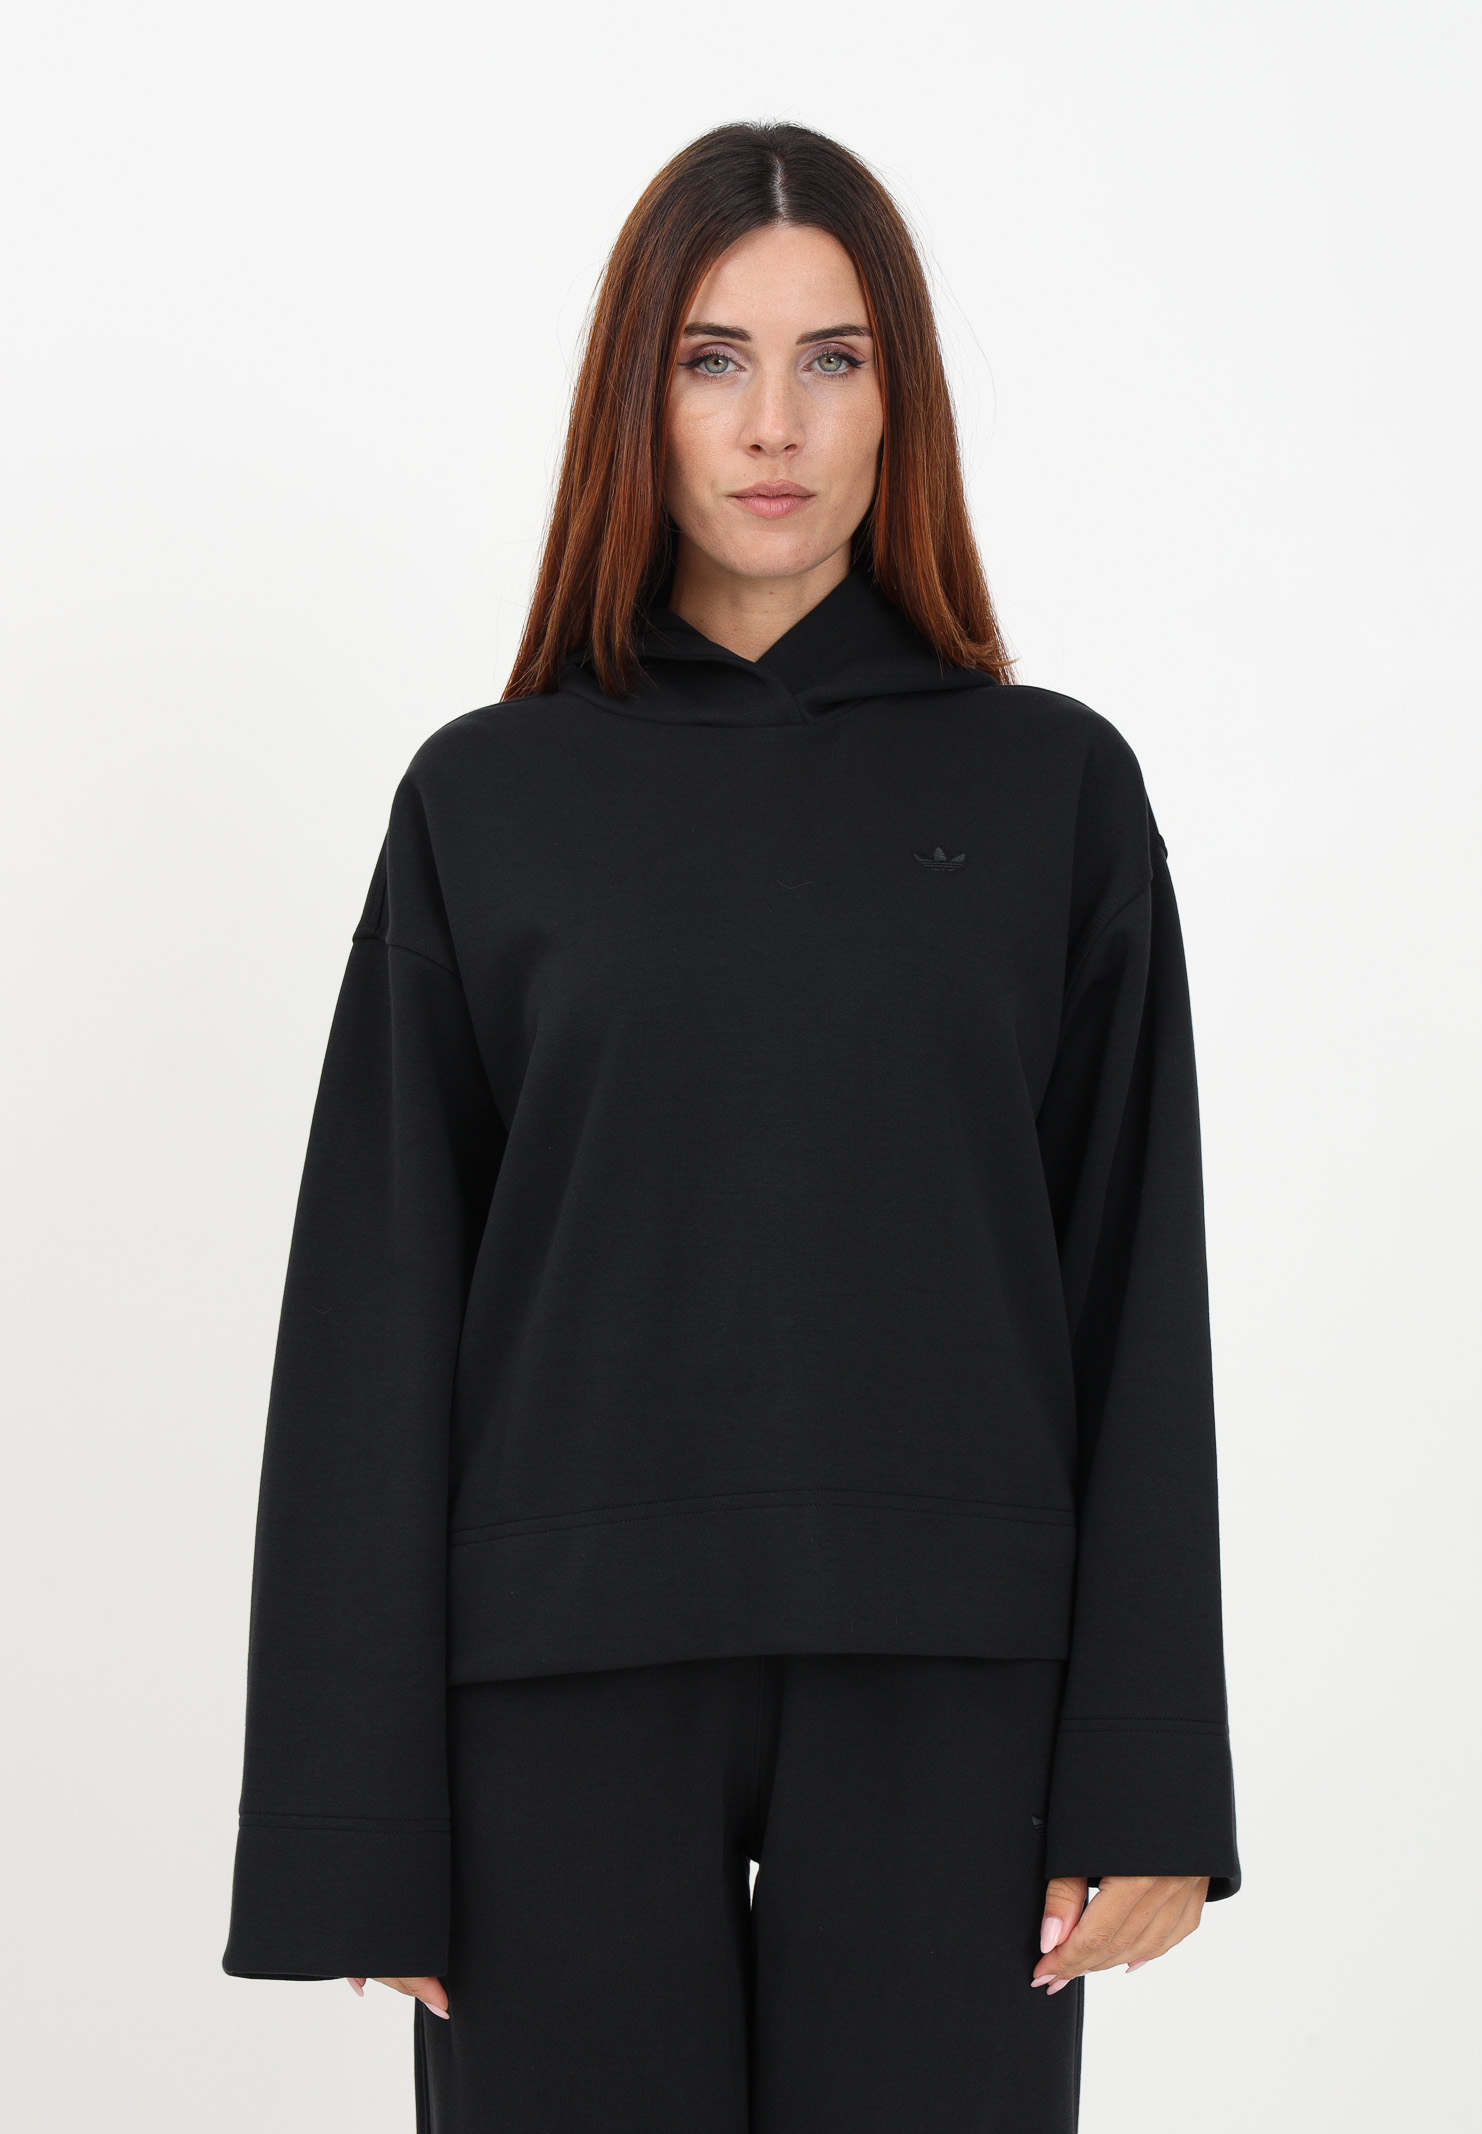 Black hoodie for women - ADIDAS ORIGINALS - Pavidas